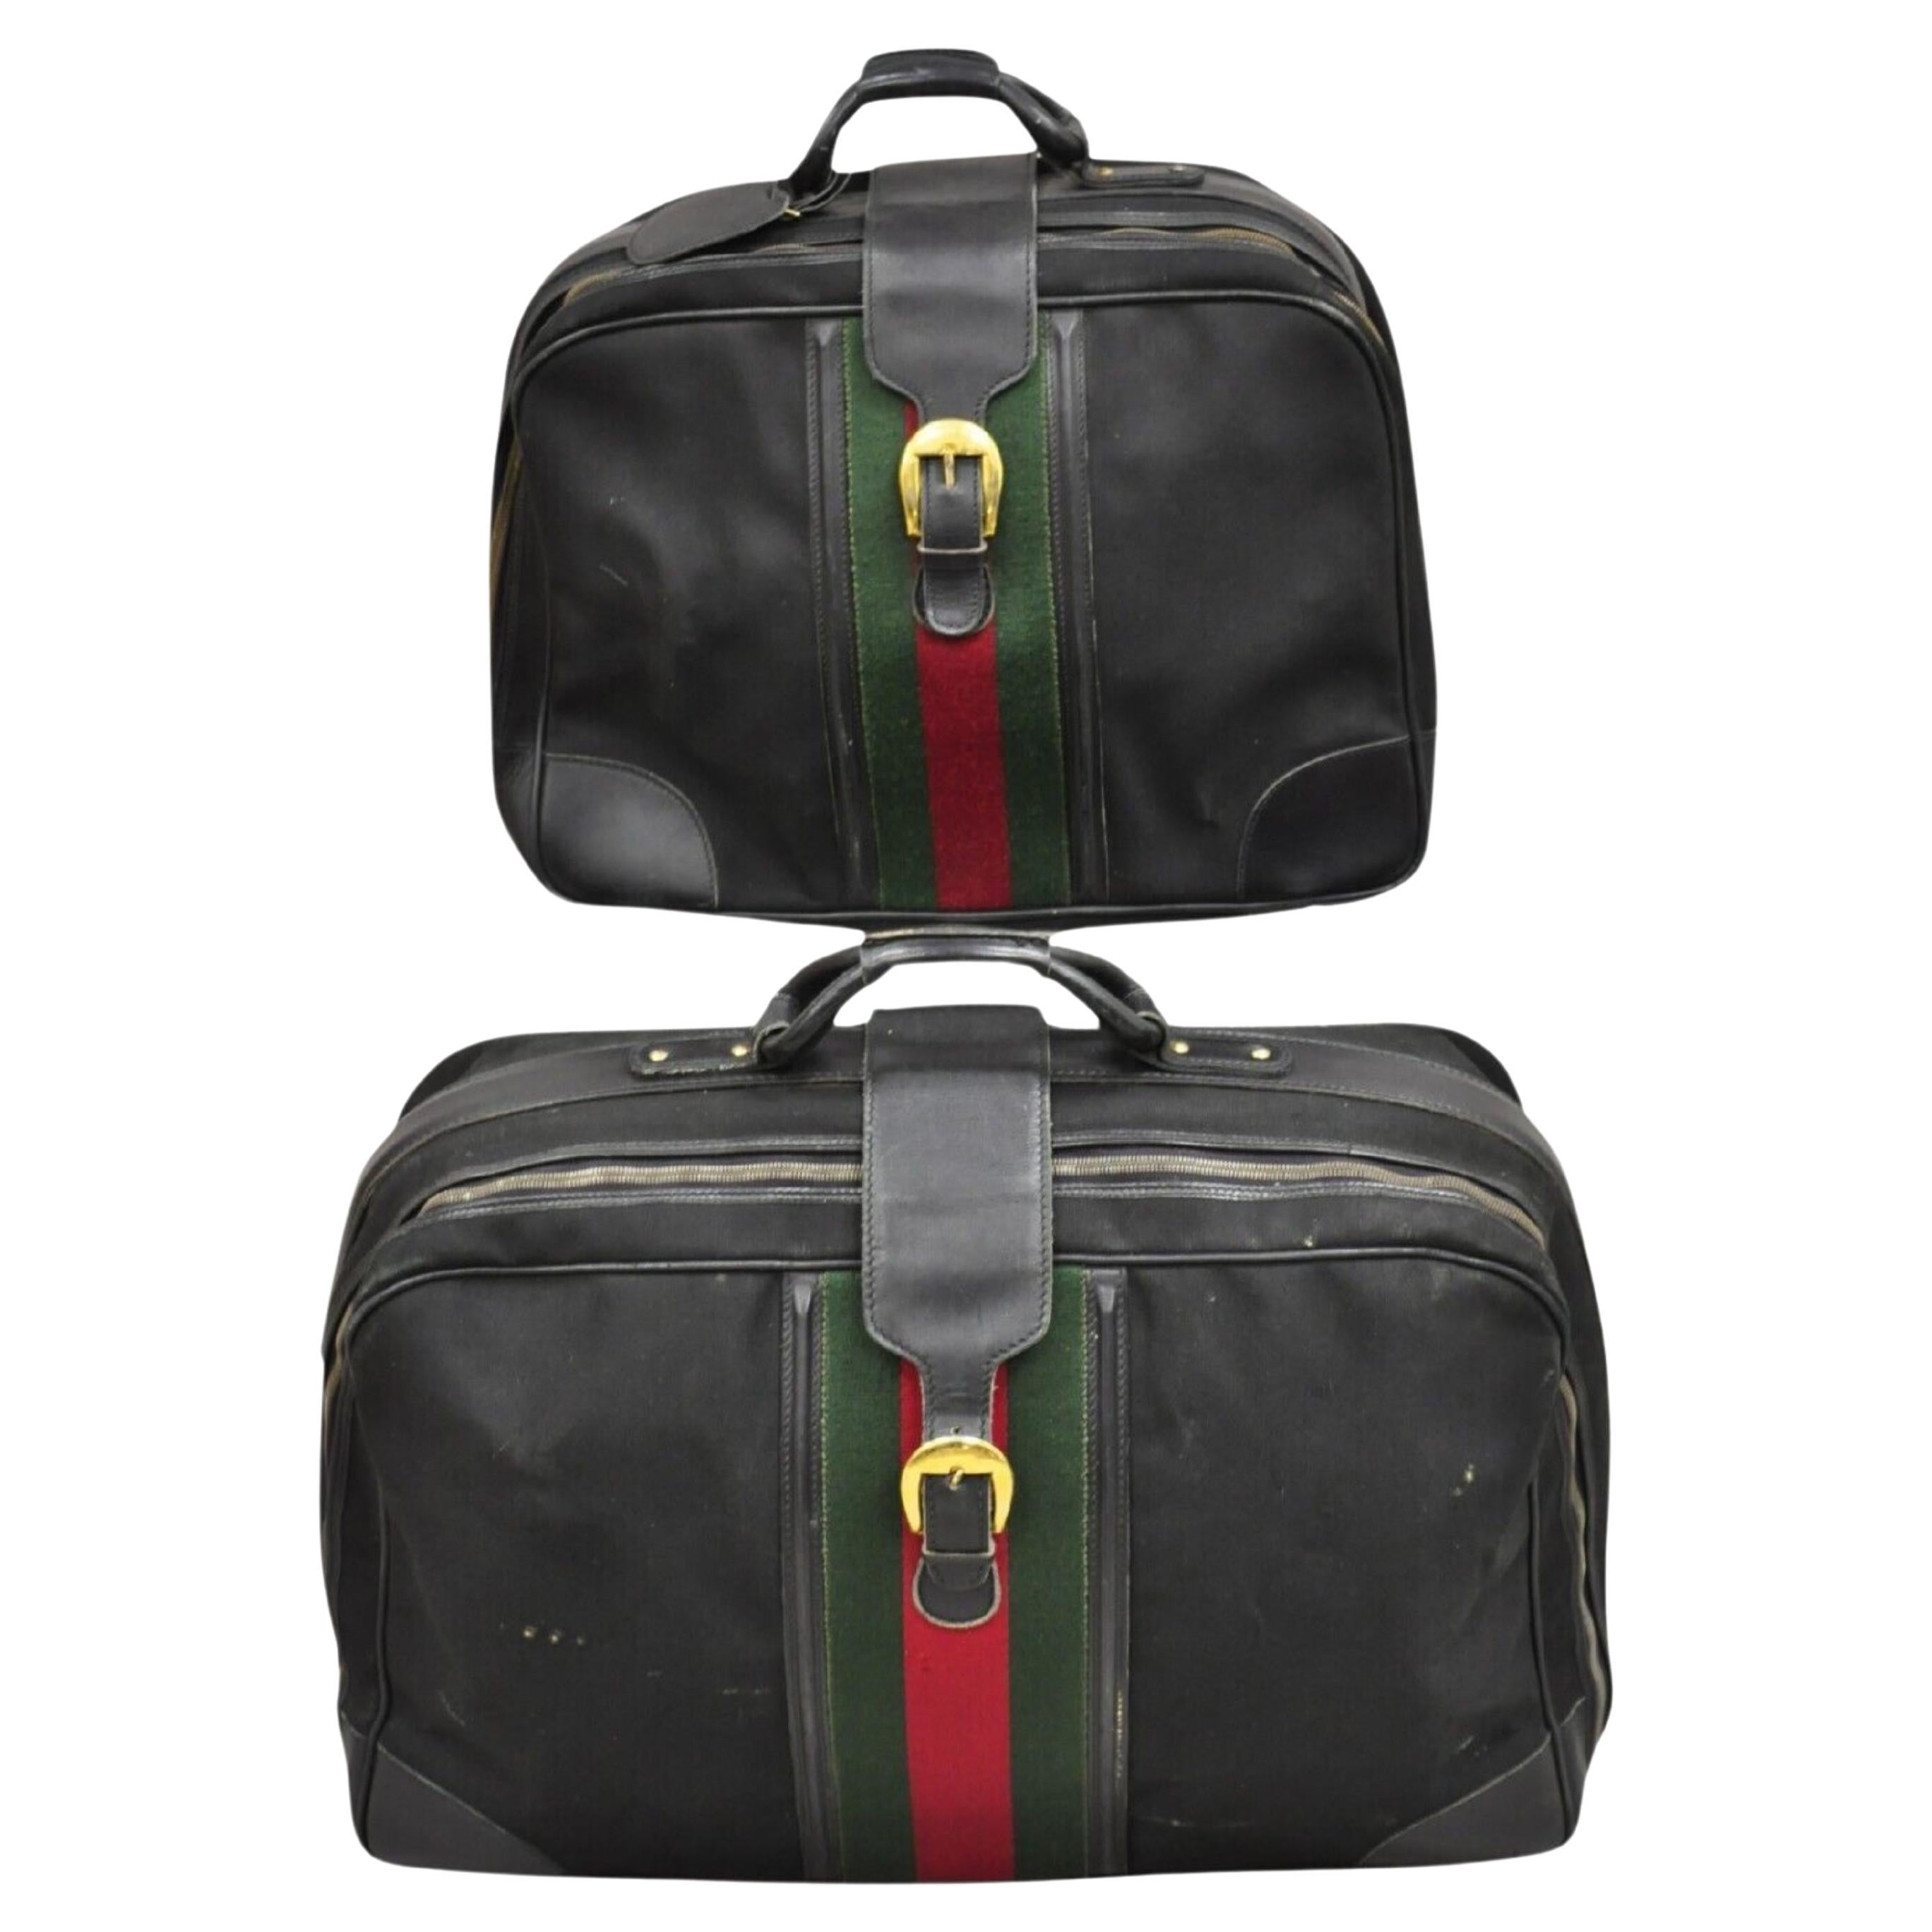 Vintage Gucci Black Canvas & Leather Suitcase Luggage Travel Bag Set - 2 Pcs For Sale